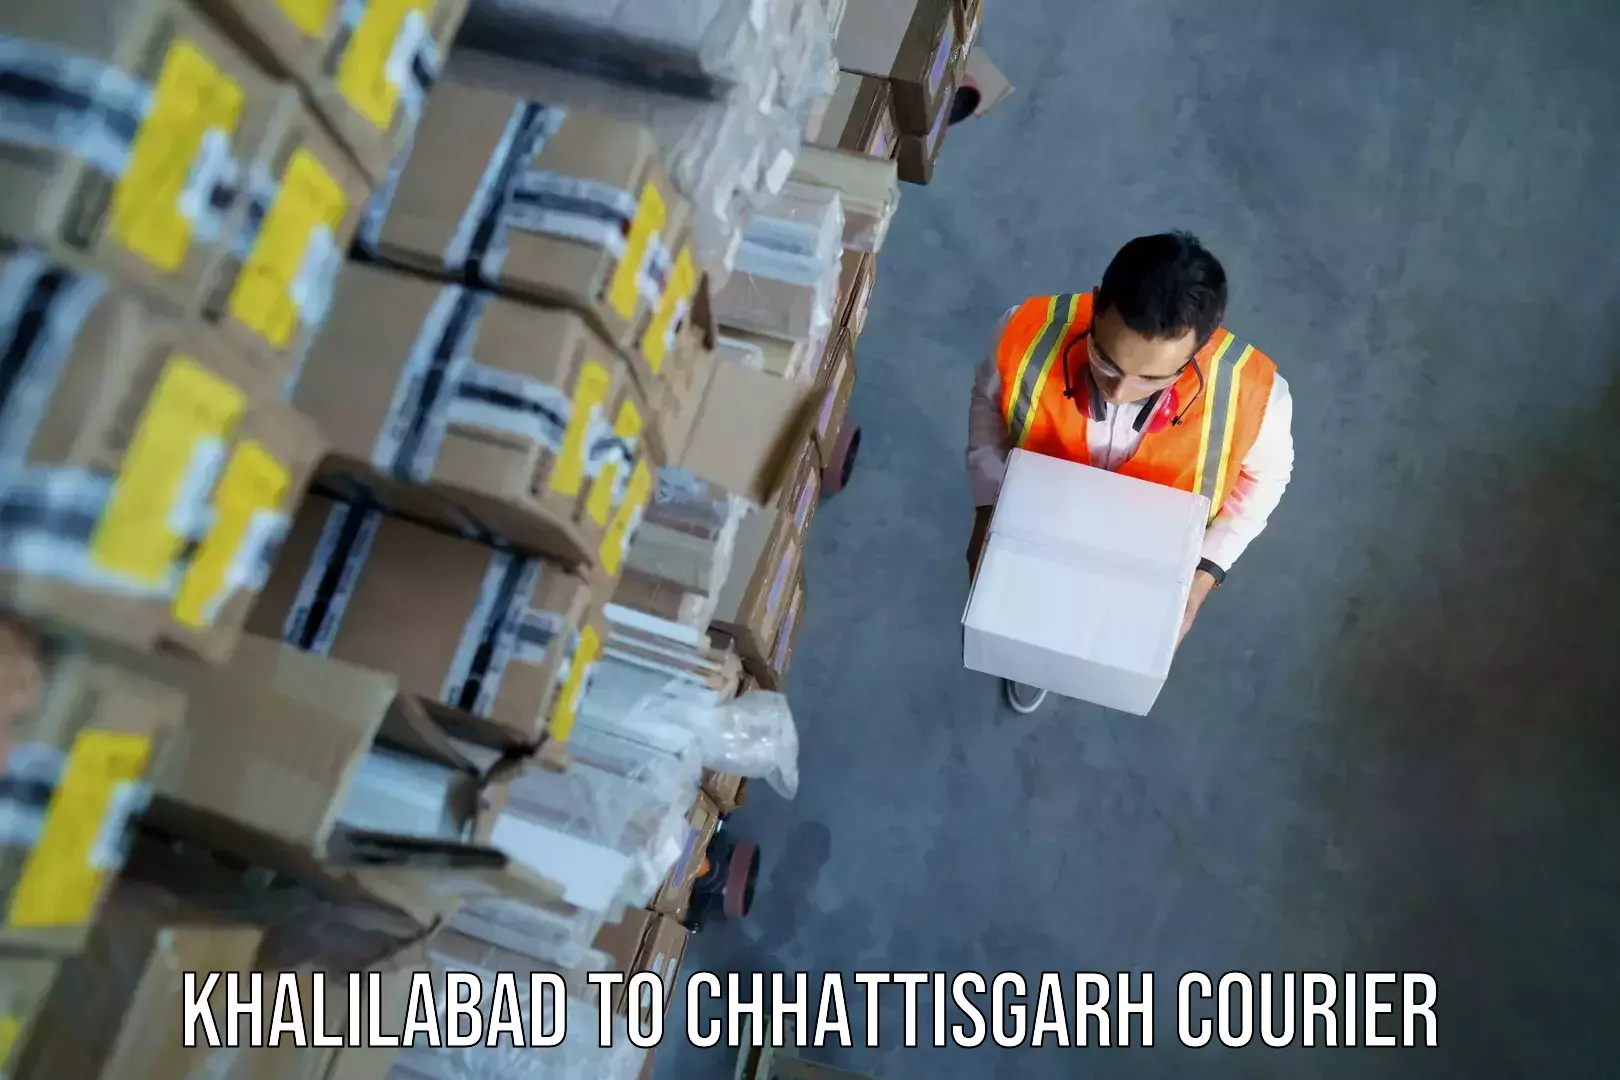 Baggage transport innovation Khalilabad to Chhattisgarh